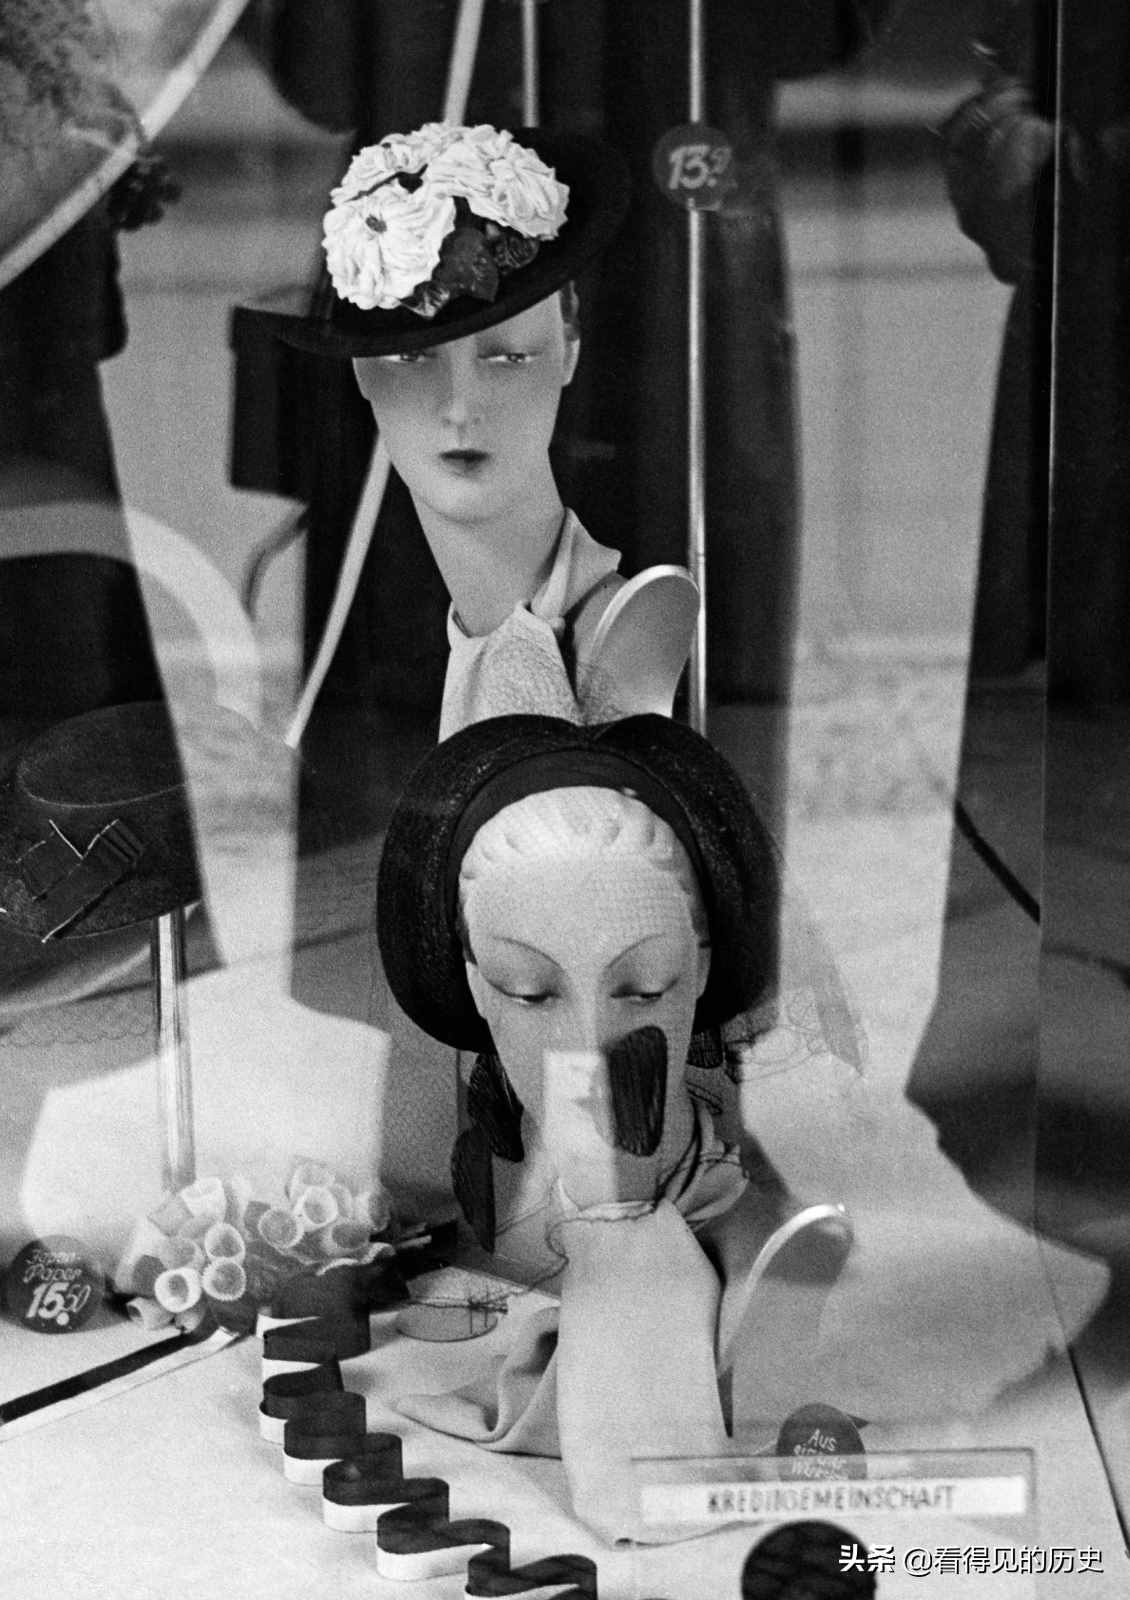 老照片 30年代德国的时装模特 很是时尚